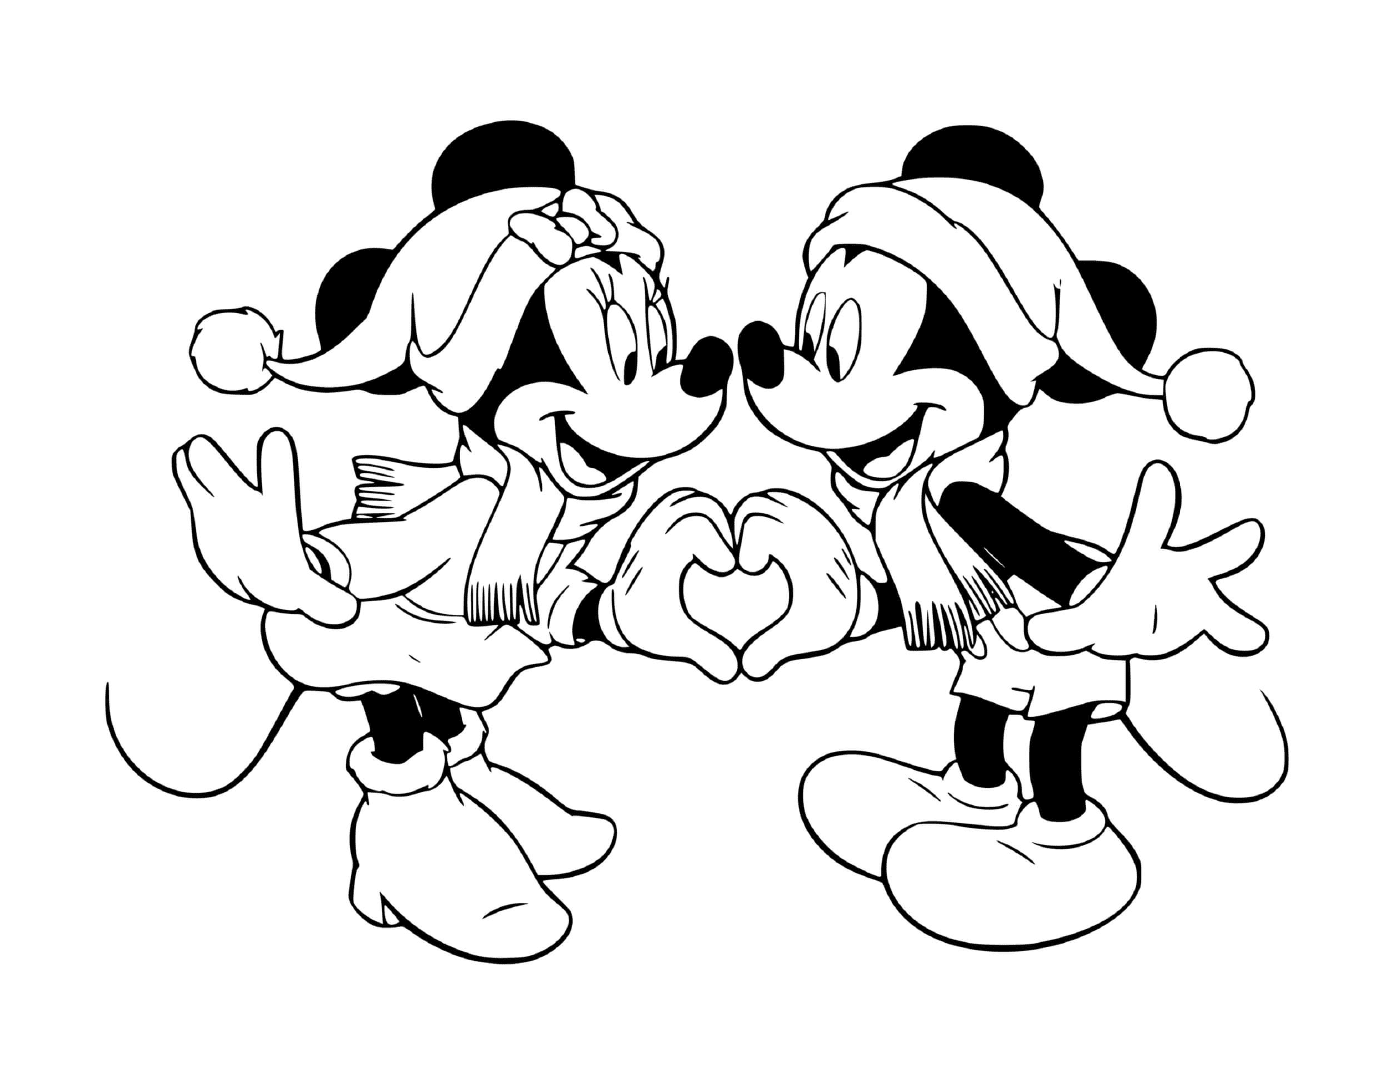  Mickey e Minnie formam um coração 